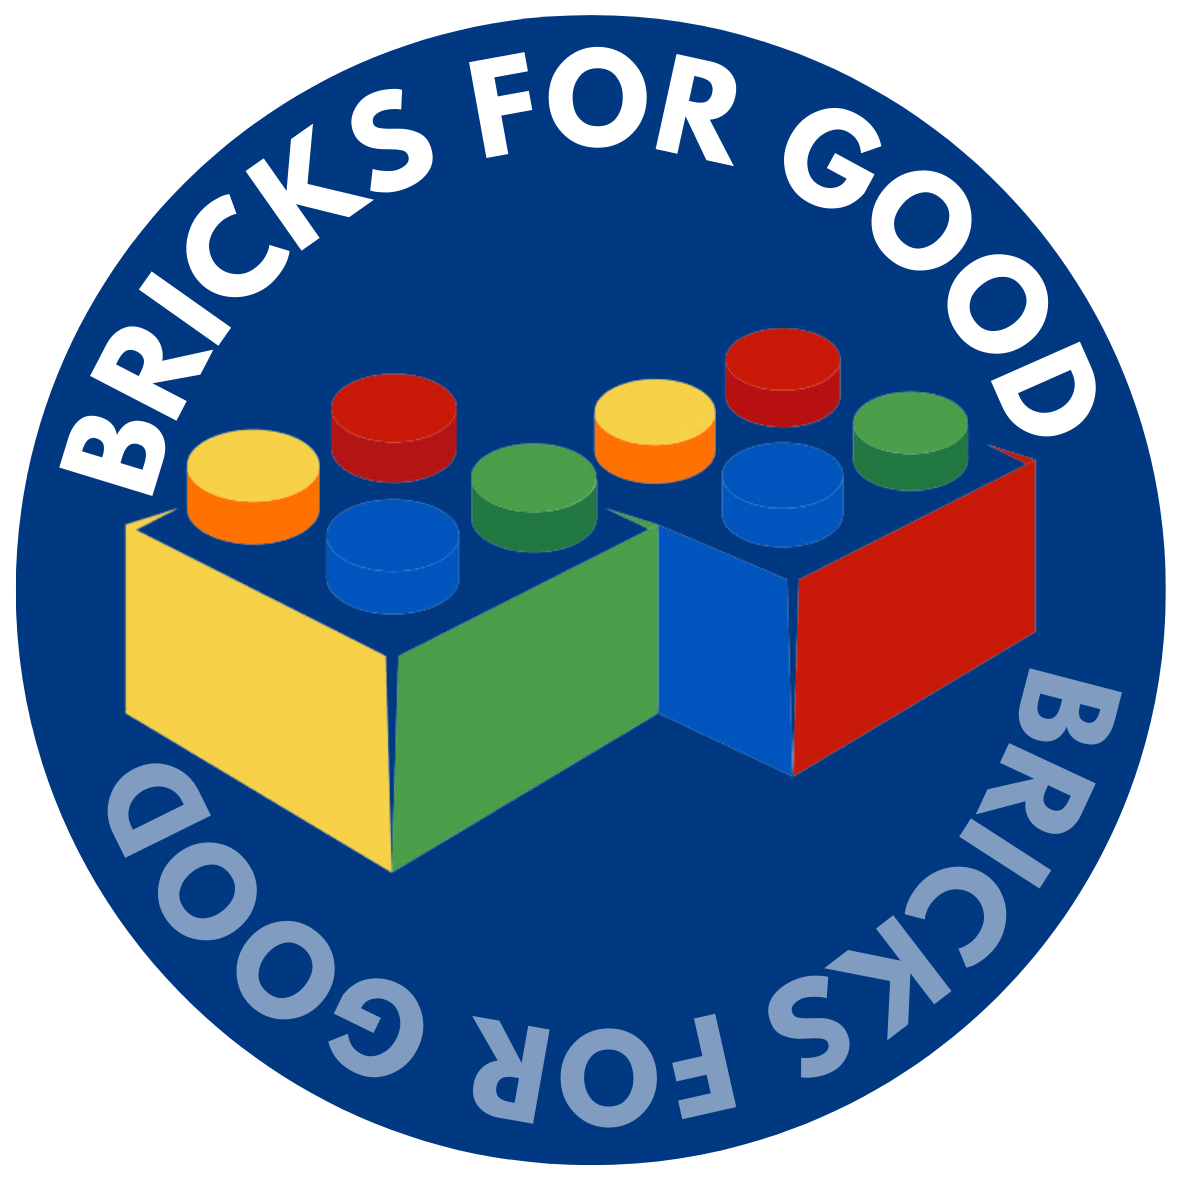 Bricks for Good